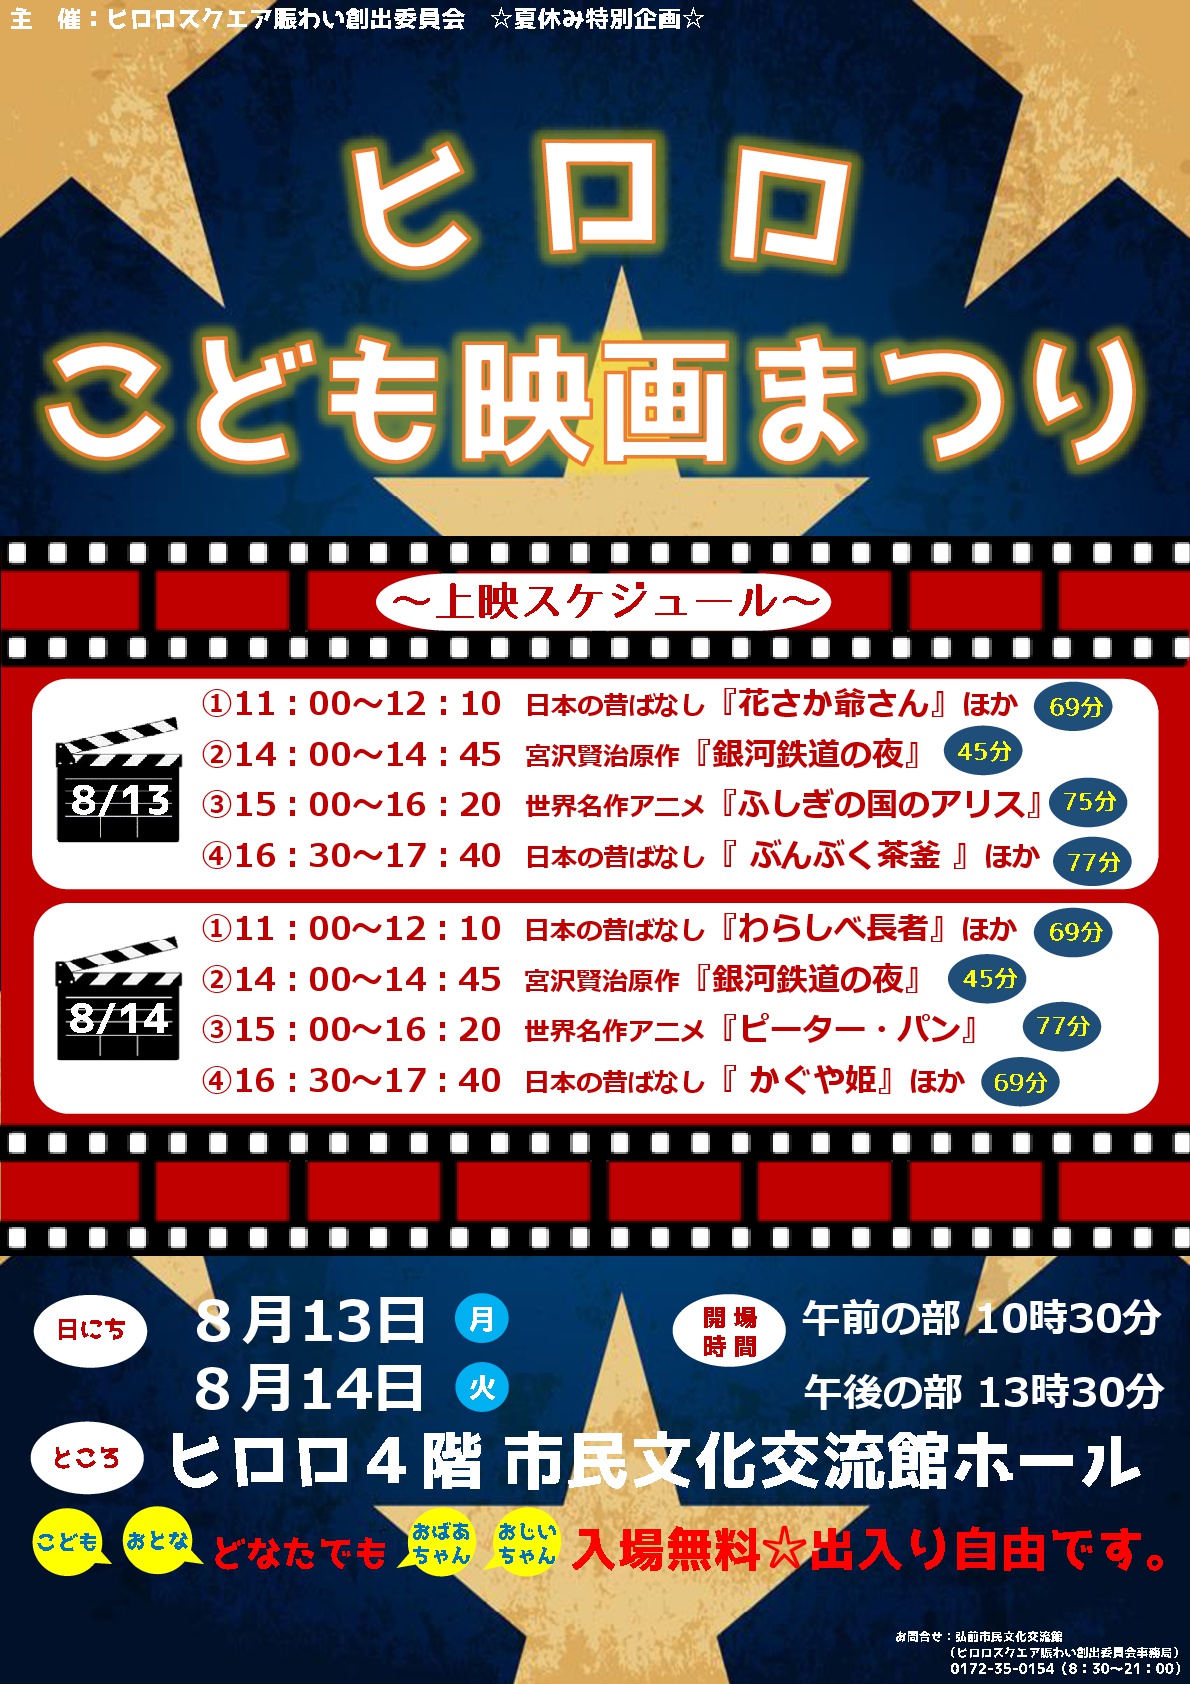 ヒロロこども映画まつり イベントカレンダー 弘前駅前公共施設 ヒロロスクエア